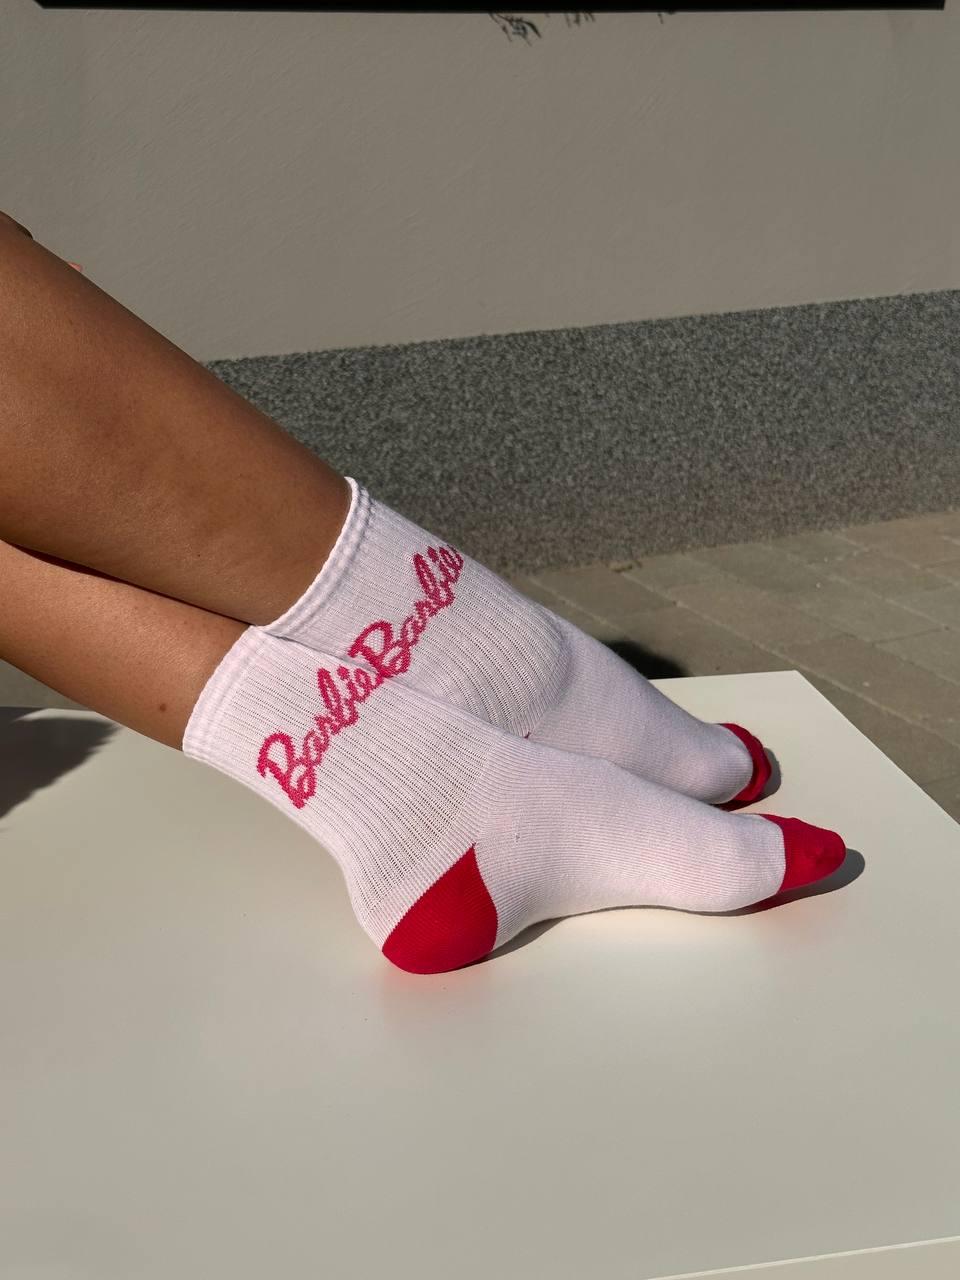 Трендові дитячі, жіночі шкарпетки з крутим принтом Barbie р. 33-36, 36-39 TM TwinSocks